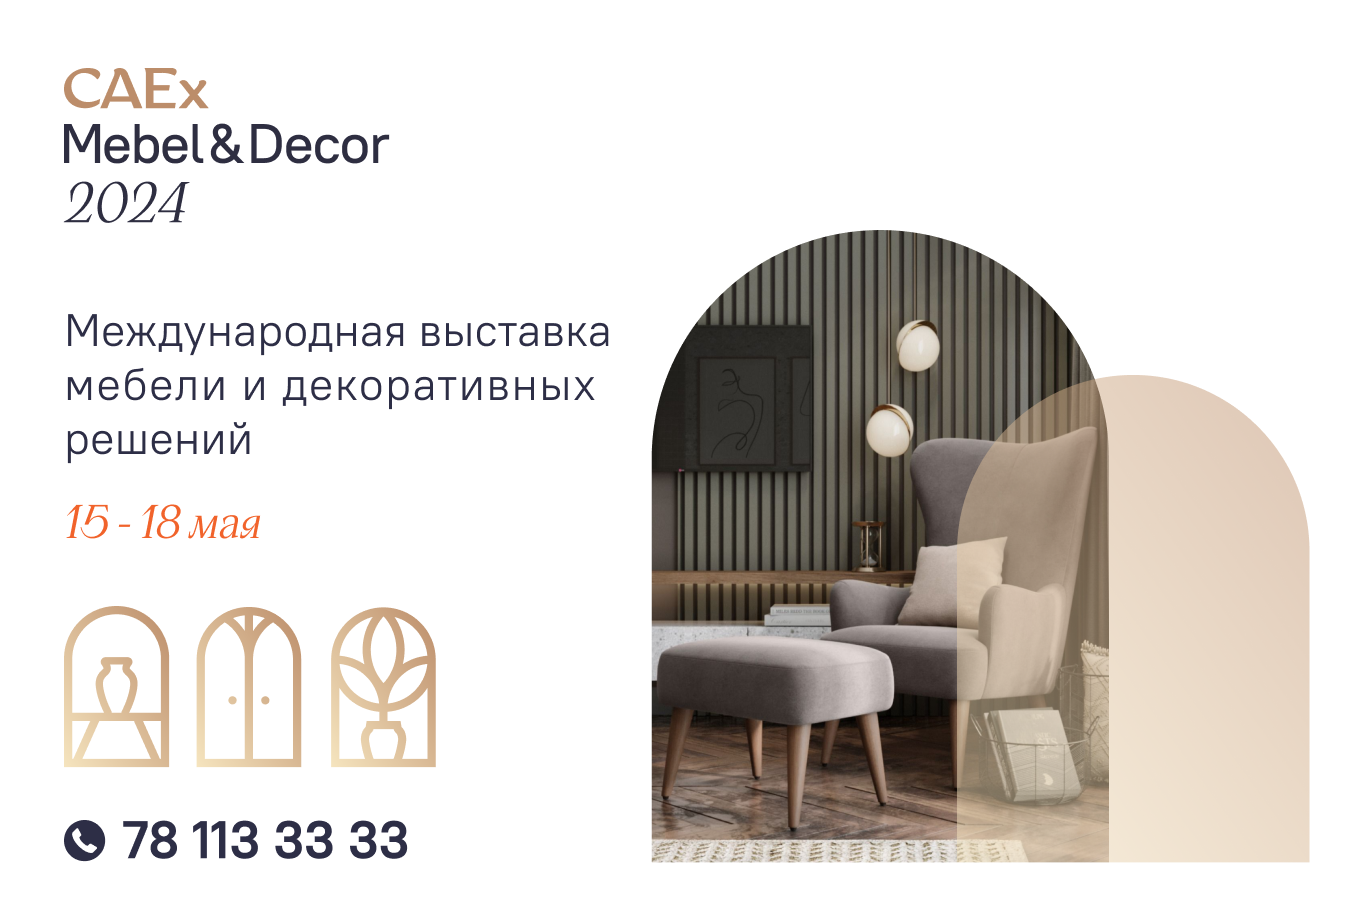 Участвуйте в международной выставке мебели и элементов декора «CAEx Mebel&Decor 2024»